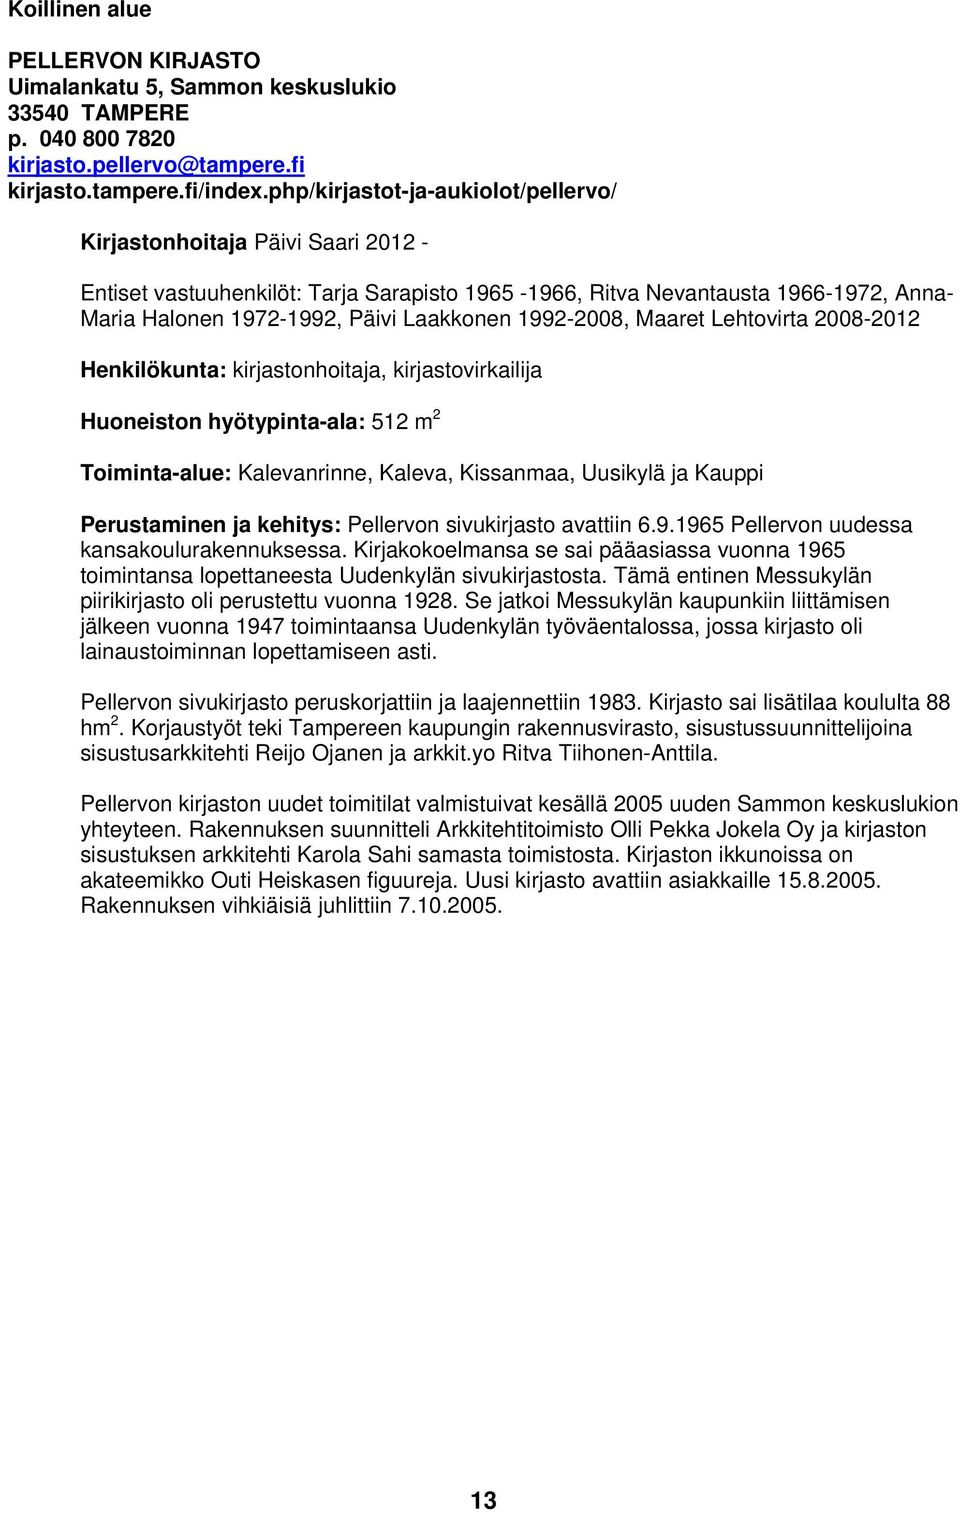 1992-2008, Maaret Lehtovirta 2008-2012 Henkilökunta: kirjastonhoitaja, kirjastovirkailija Huoneiston hyötypinta-ala: 512 m 2 Toiminta-alue: Kalevanrinne, Kaleva, Kissanmaa, Uusikylä ja Kauppi